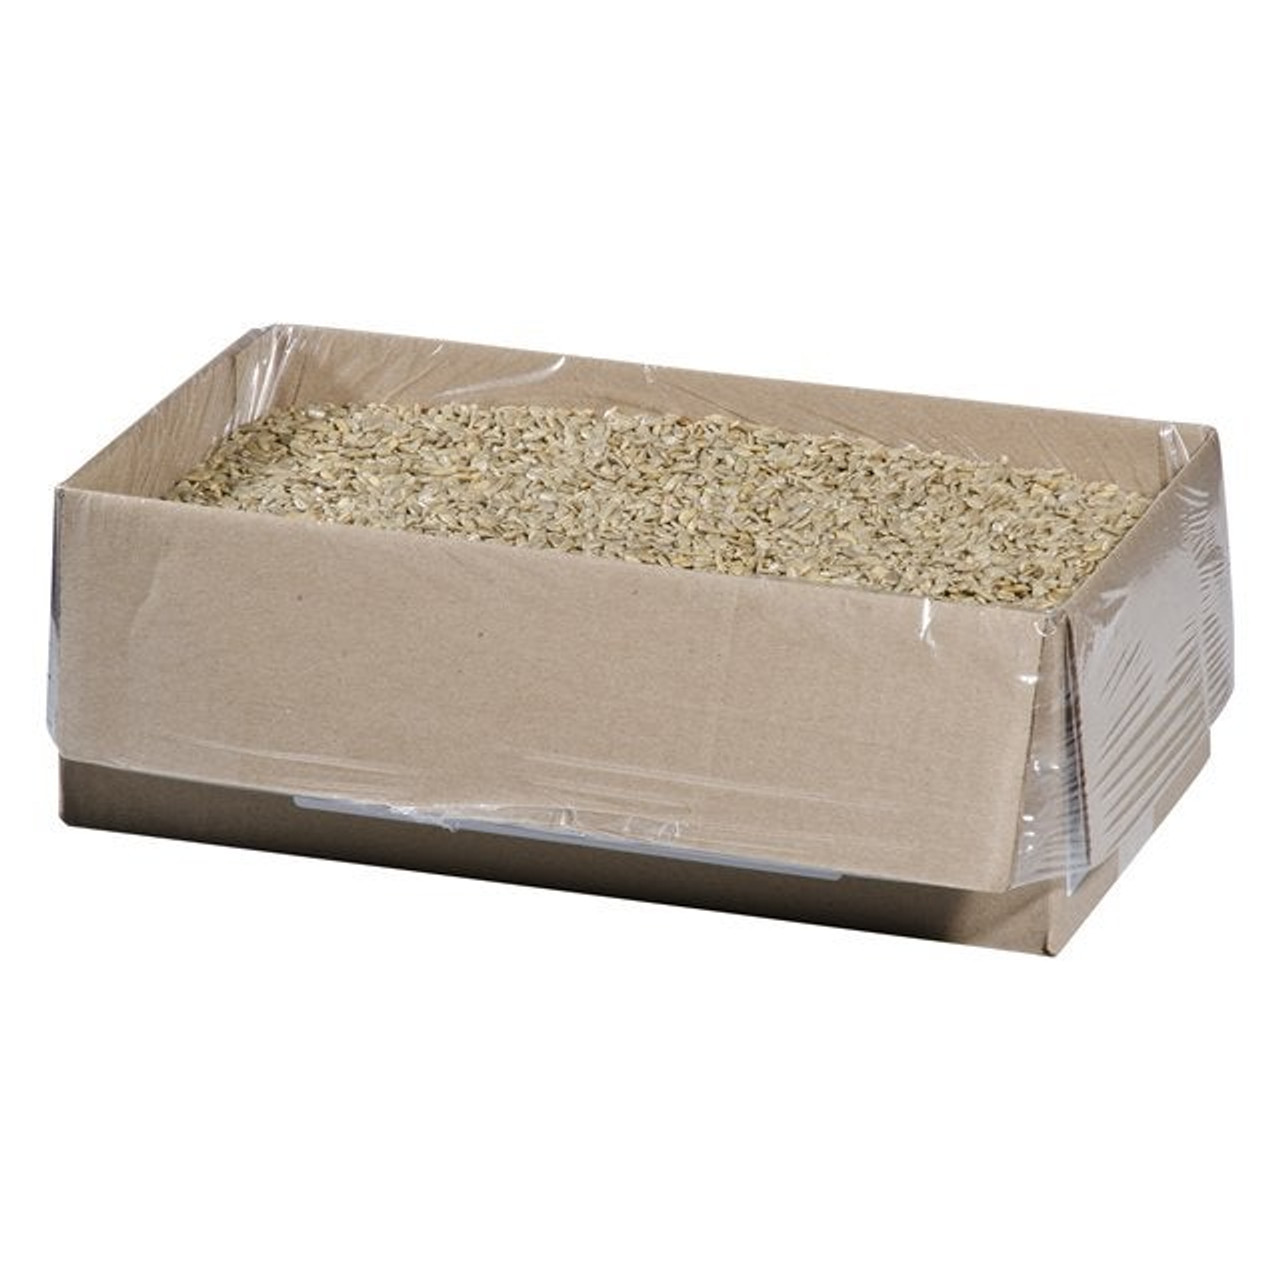 Trophy Foods Roasted Salted Sunflower Seeds | 6KG/Unit, 1 Unit/Case